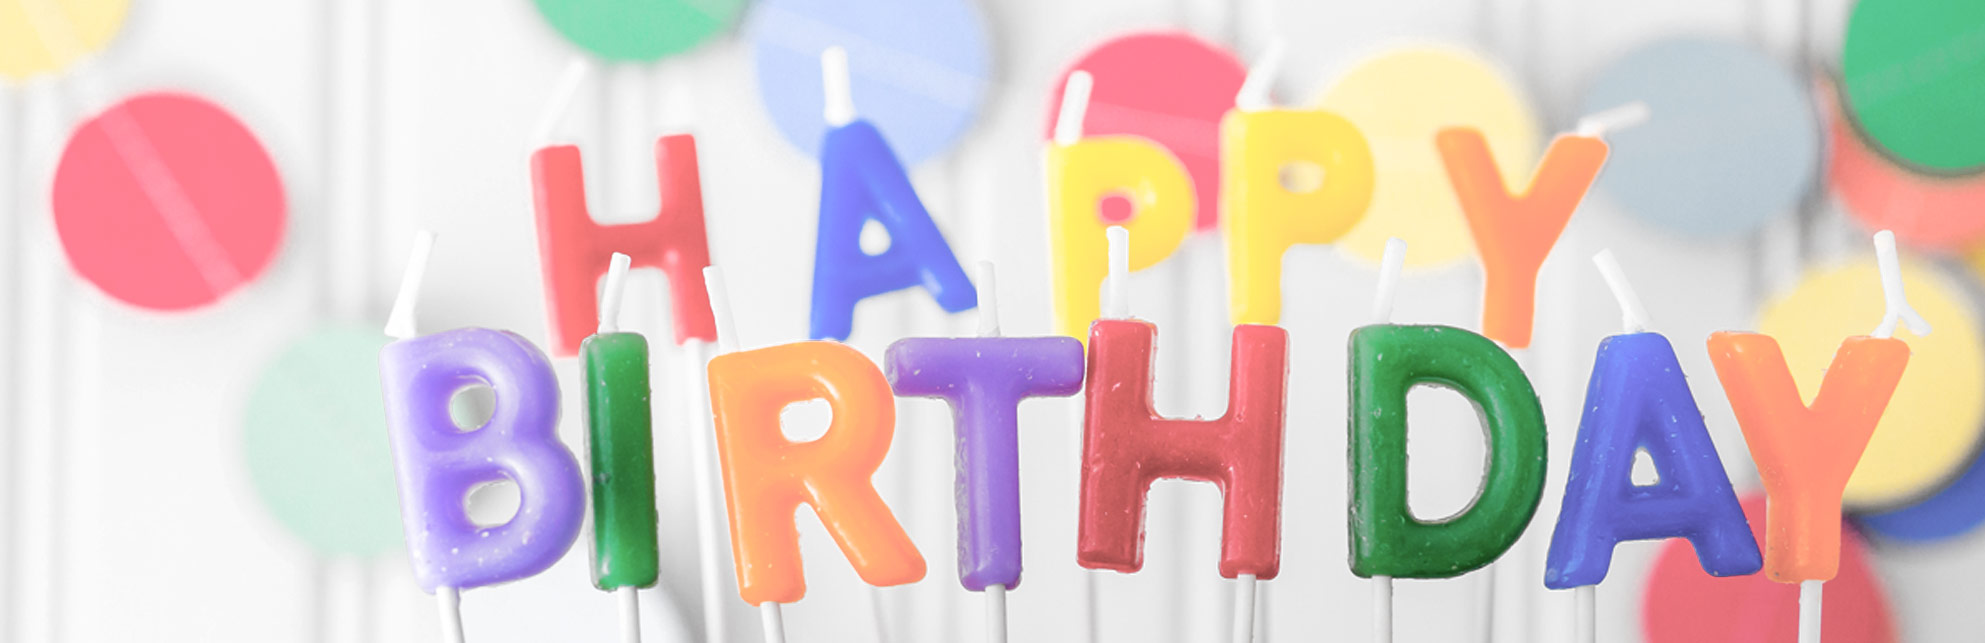 happy birthday partimpim - festa de aniversário - disfarces e artigos de festa e decoração